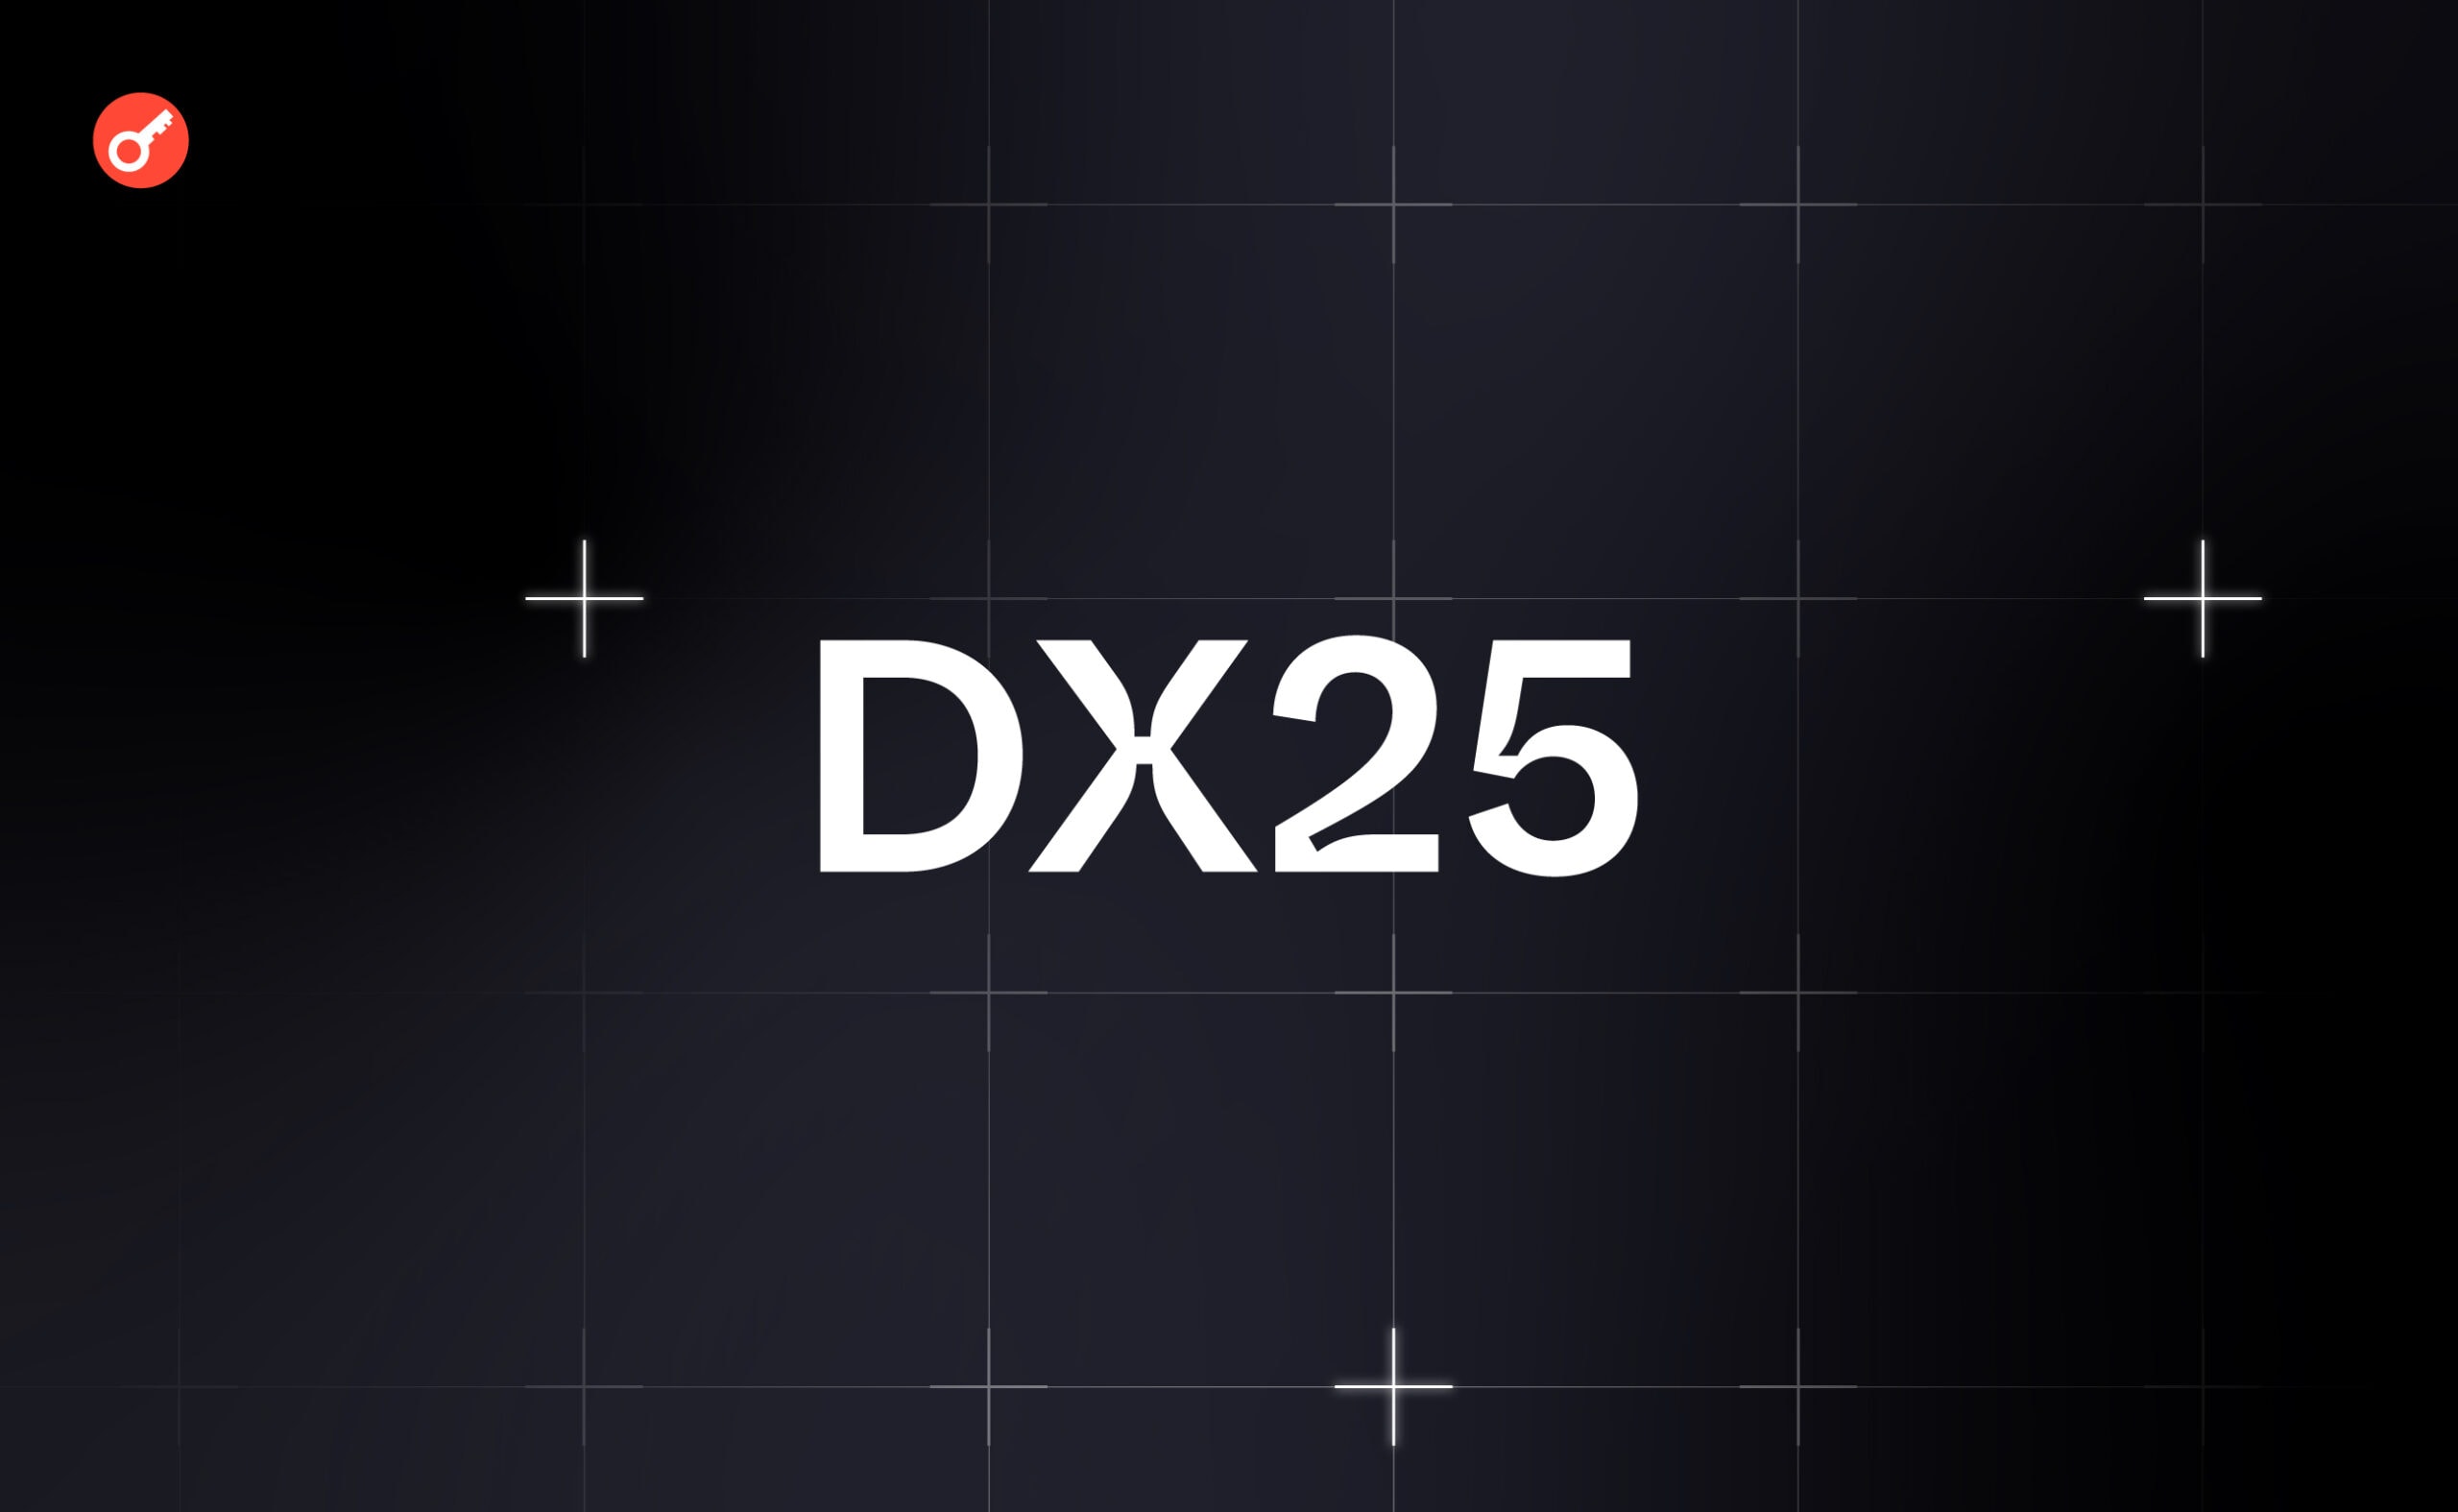 DX25 тестнет: гайд по выполнению активностей. Заглавный коллаж статьи.